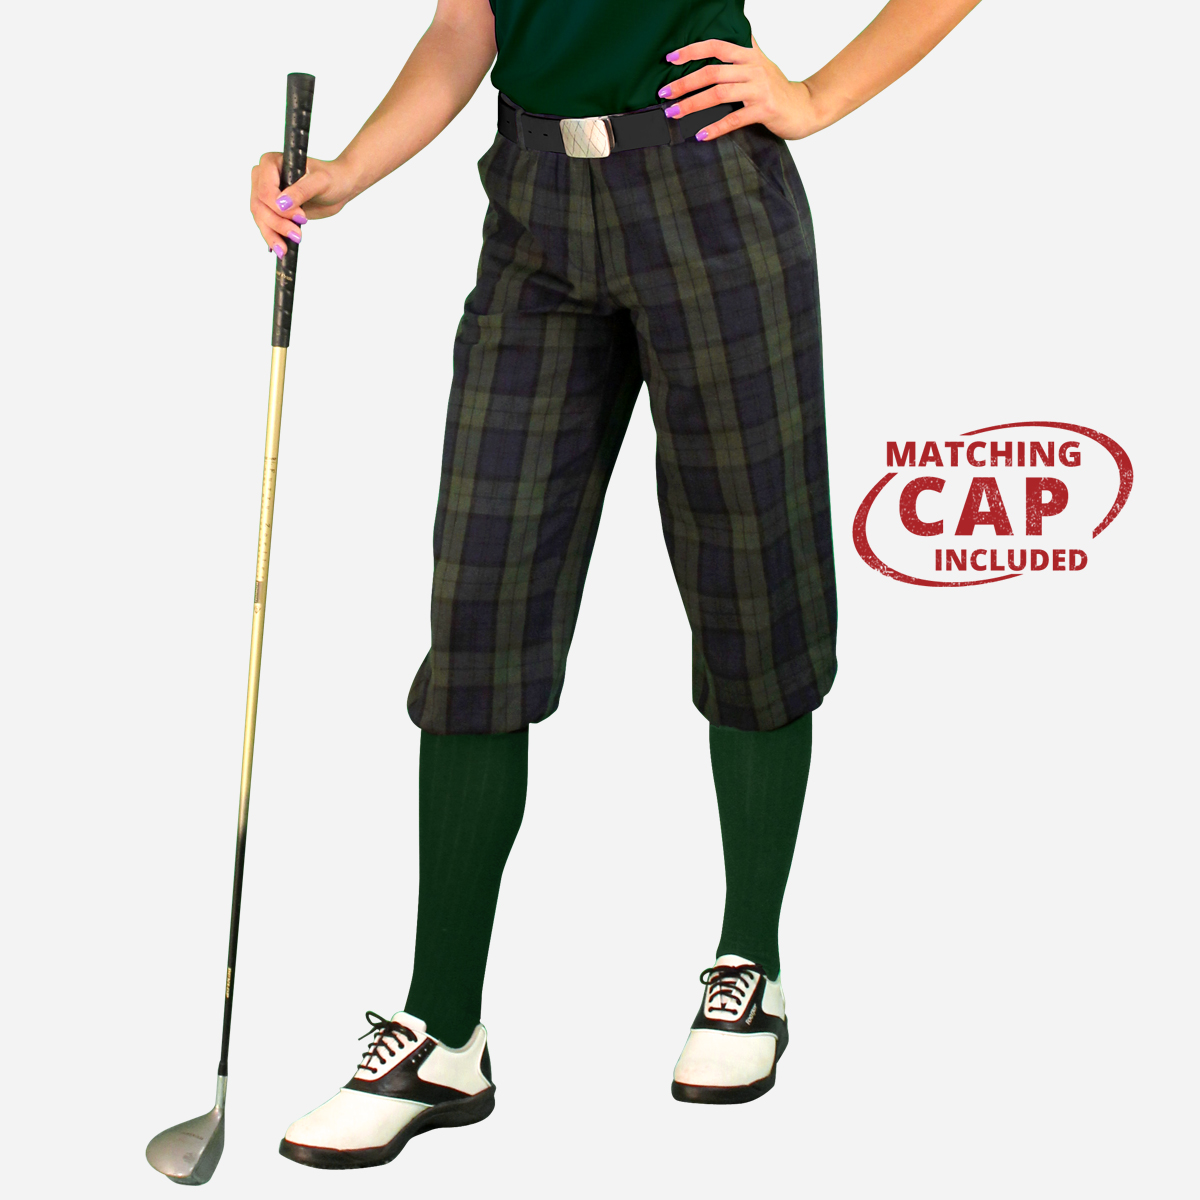 Par 5' Ladies Plaid Golf Knickers & Cap